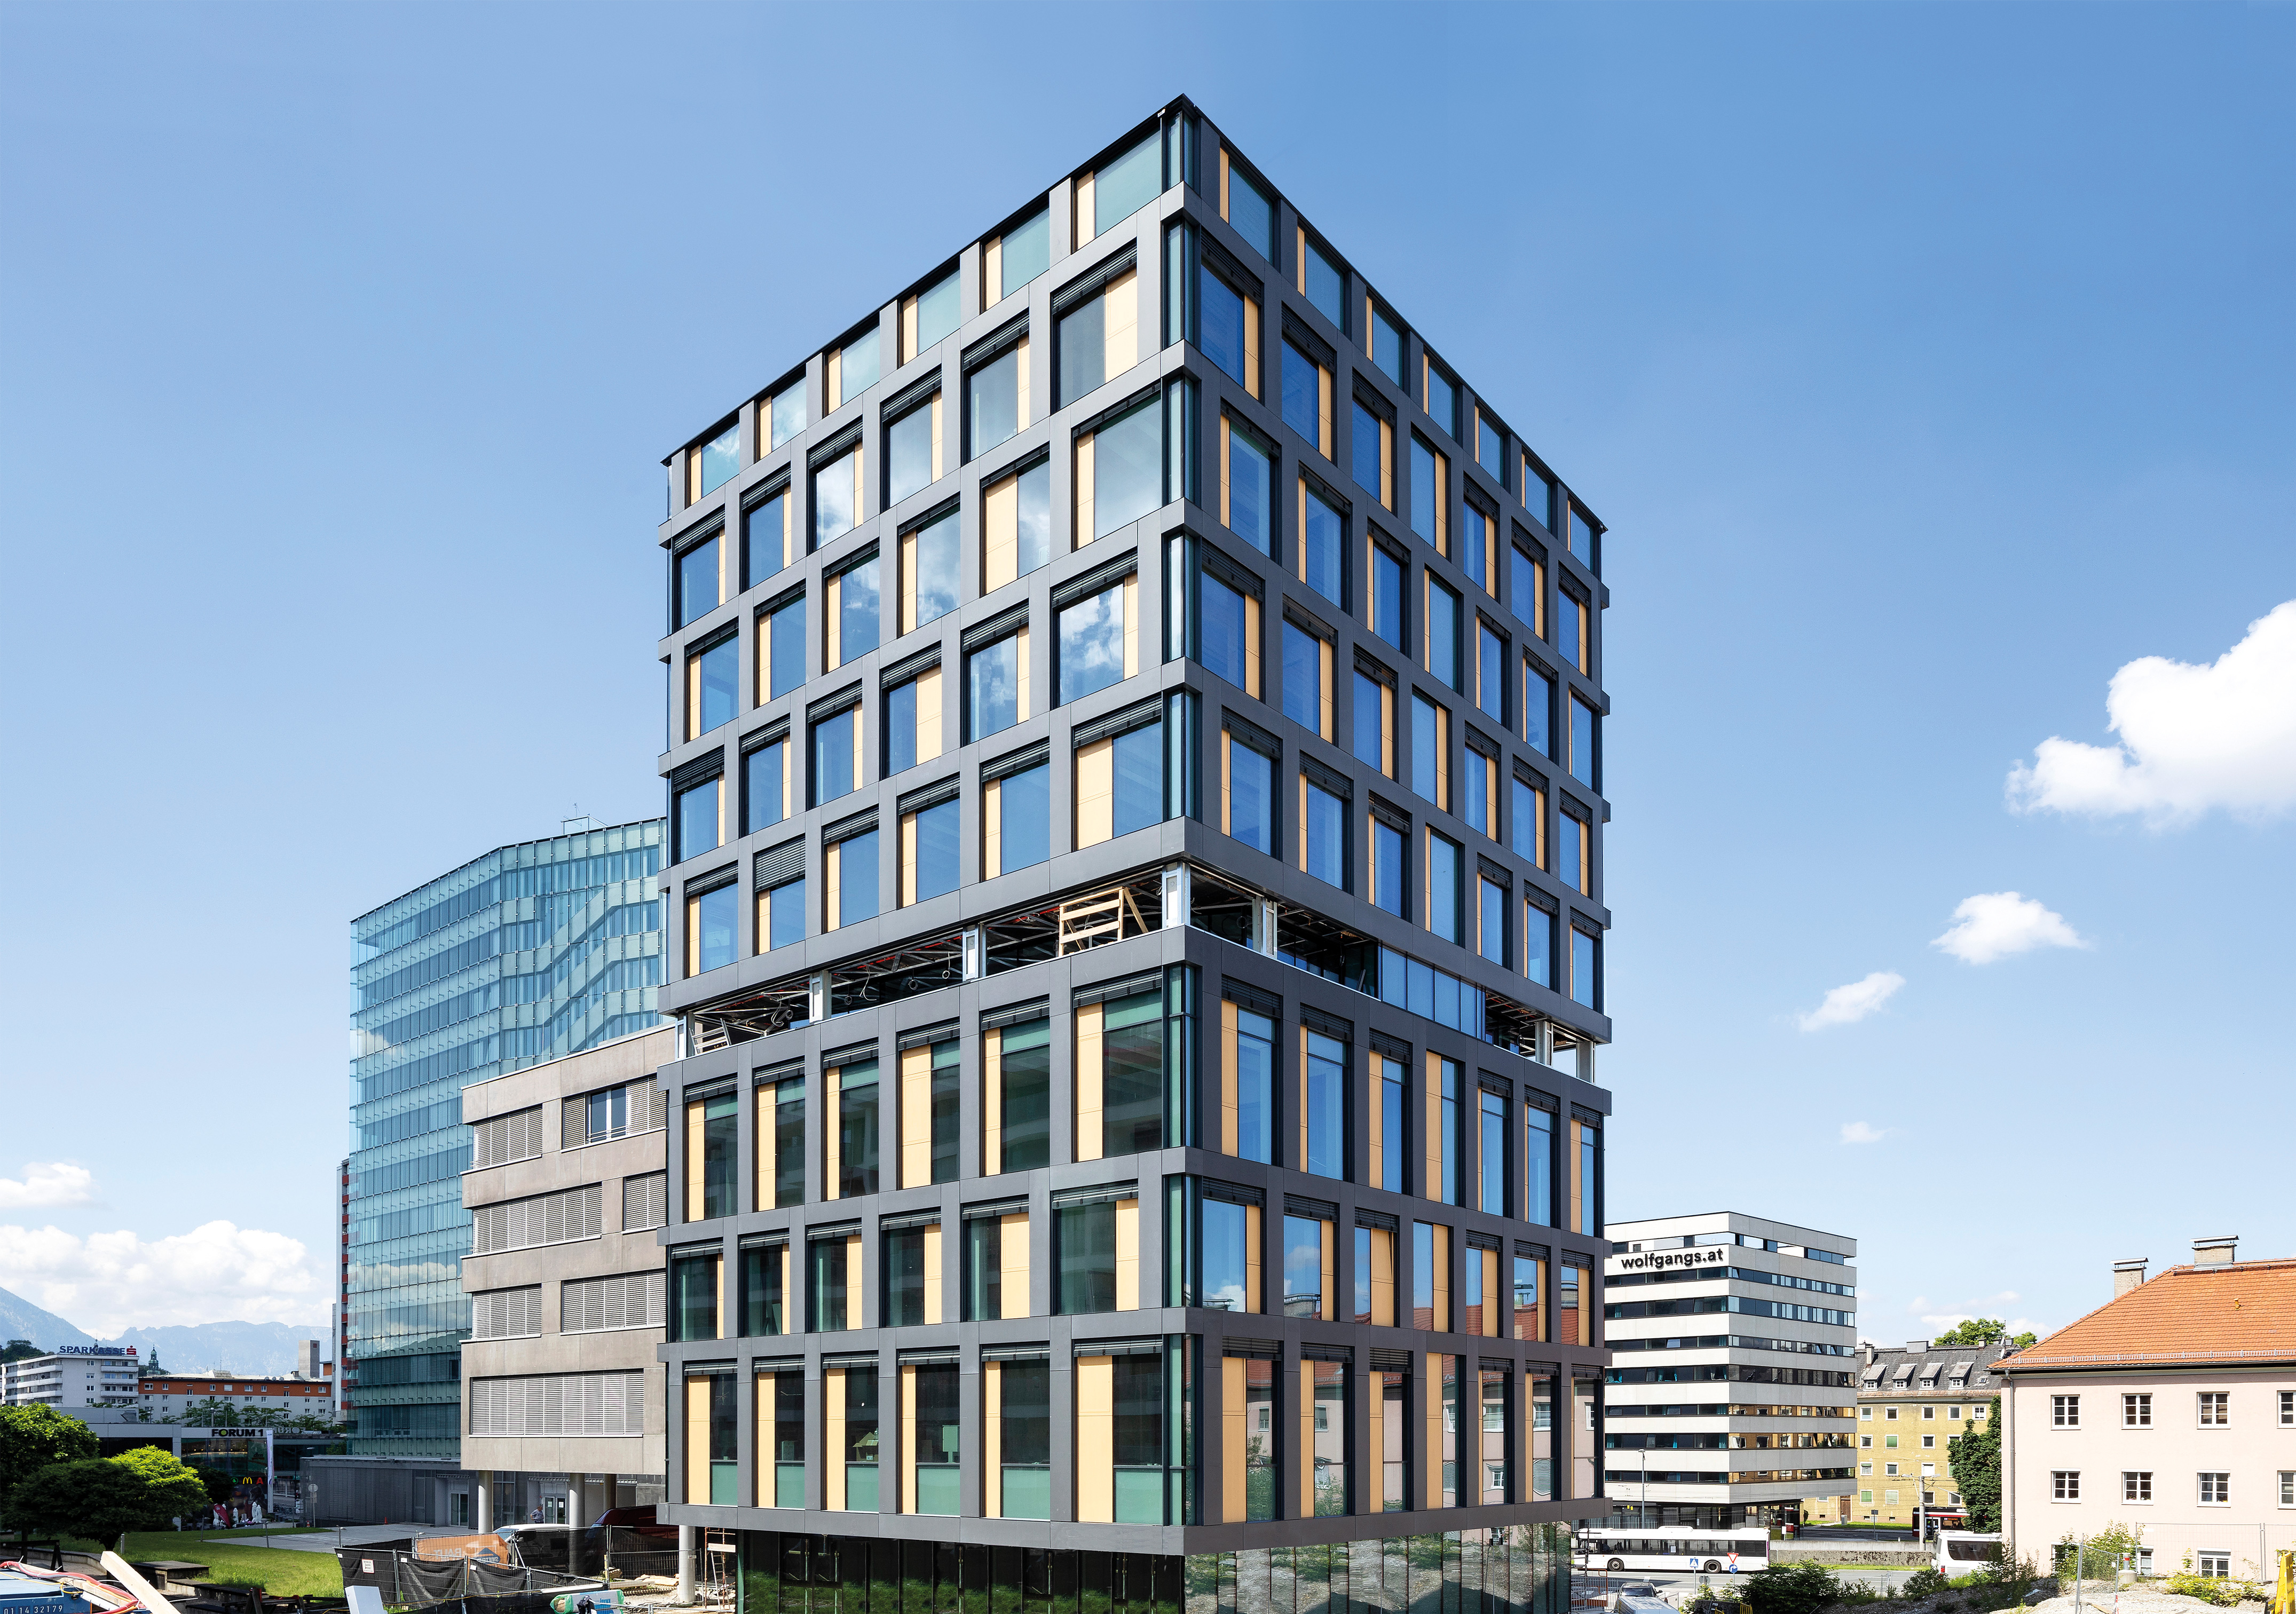 Bürogebäude der österreichischen Gesundheitskasse in Holz-/Hybridbauweise, Salzburg - Byggearbejde